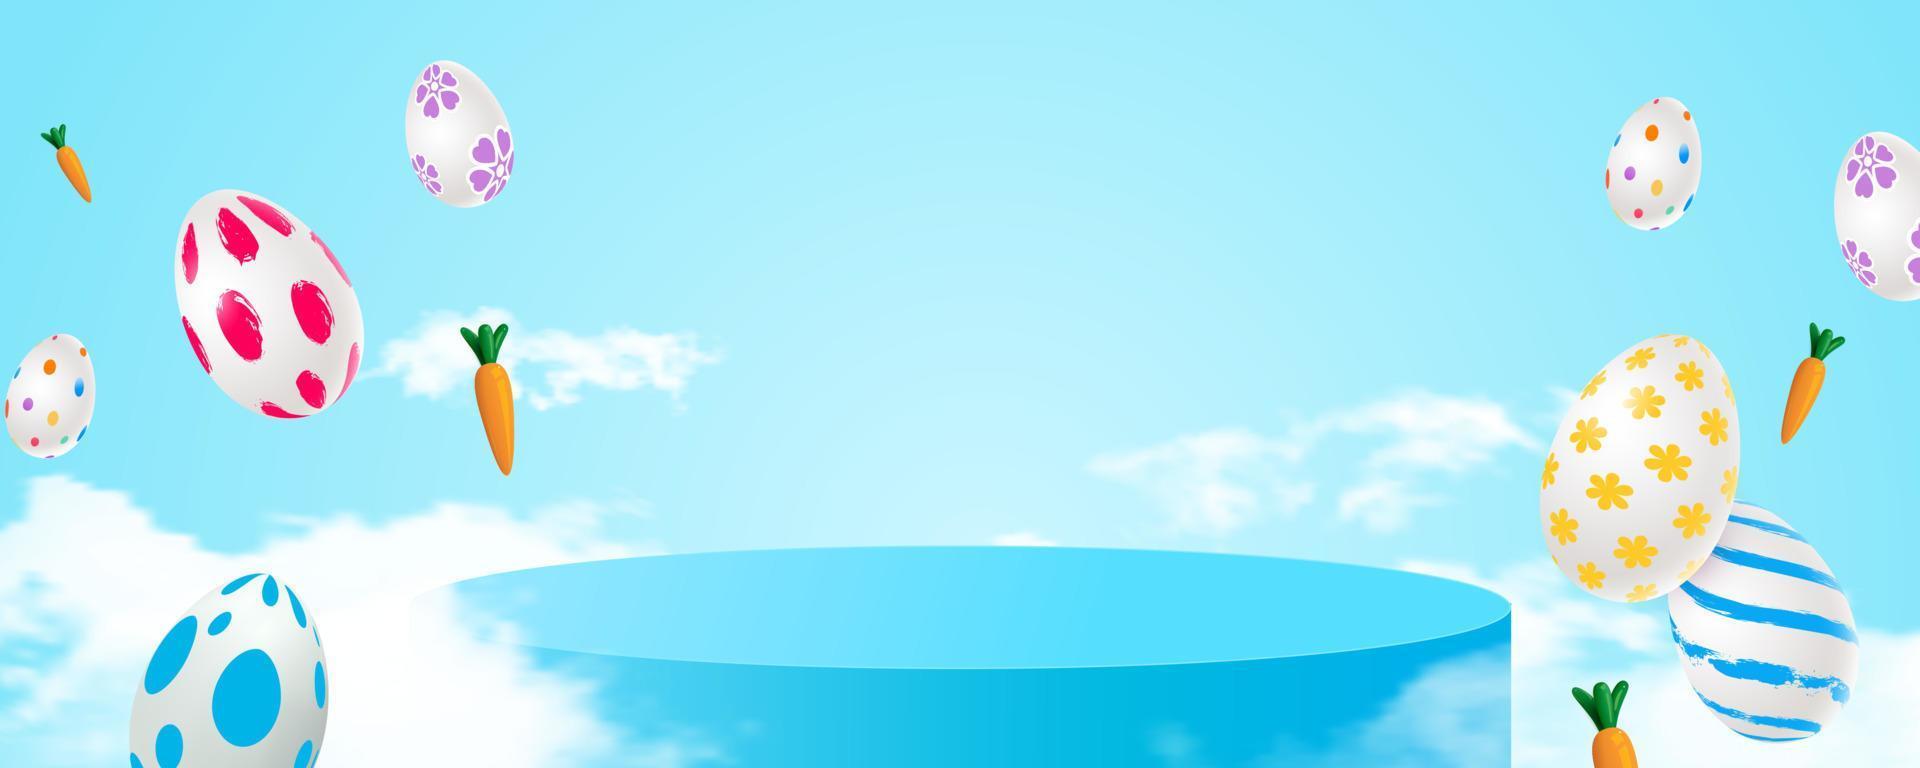 cena minimalista com um pódio cilíndrico azul nas nuvens e ovos de páscoa voadores e cenouras. palco para demonstração do produto, vitrine. ilustração vetorial vetor